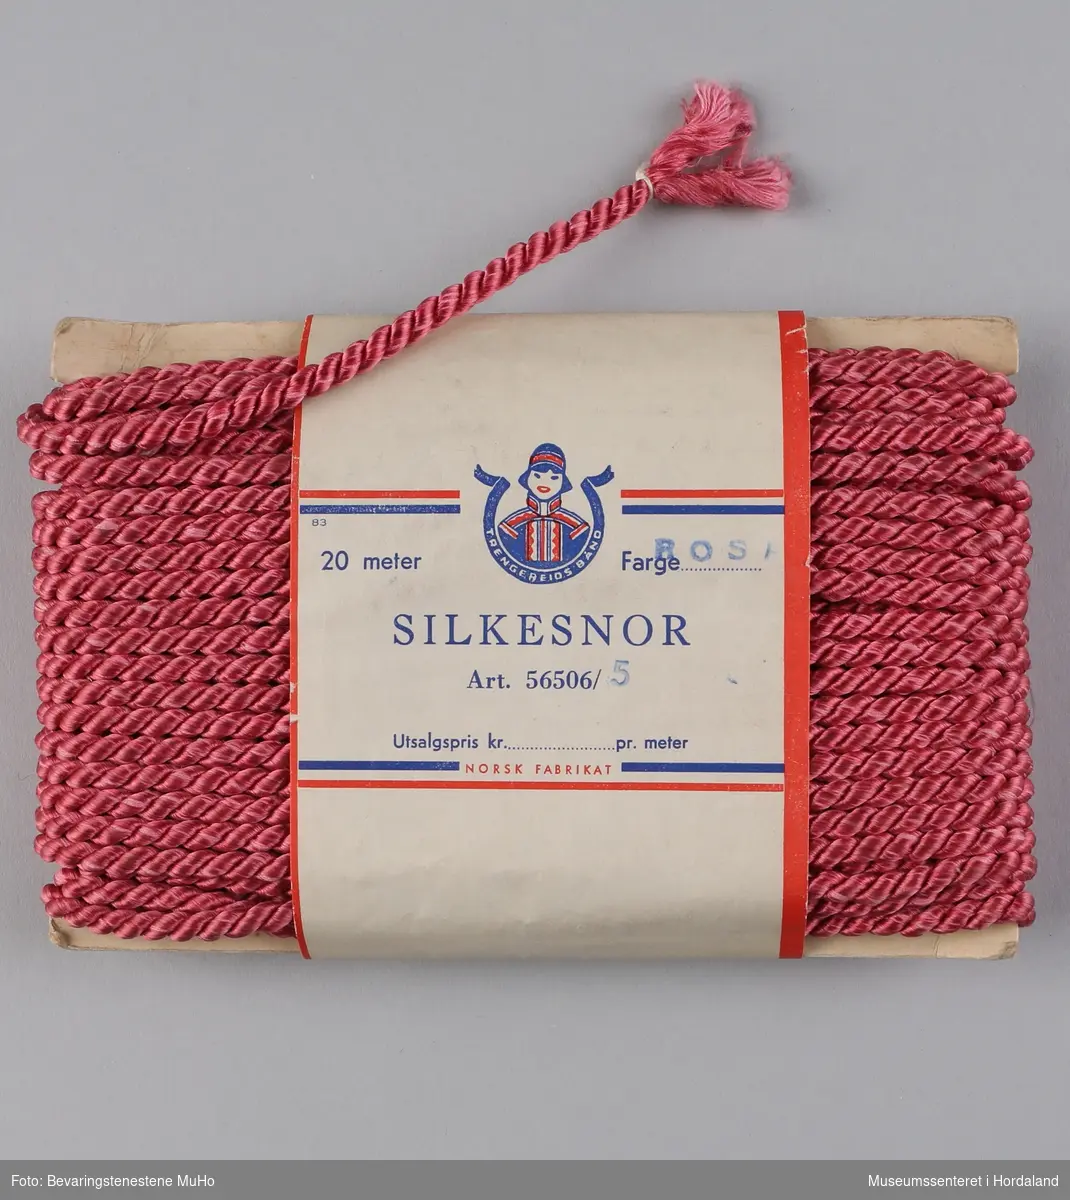 Ein pakke rosa silkesnor frå Trengereid Fabrikker i Bergen, i uopna emballasje. 

"Nylonbånd - Like velegnet som trekke- og pyntebånd til f.eks. babyplagg. Kan også brukes som dekorasjonsbånd."